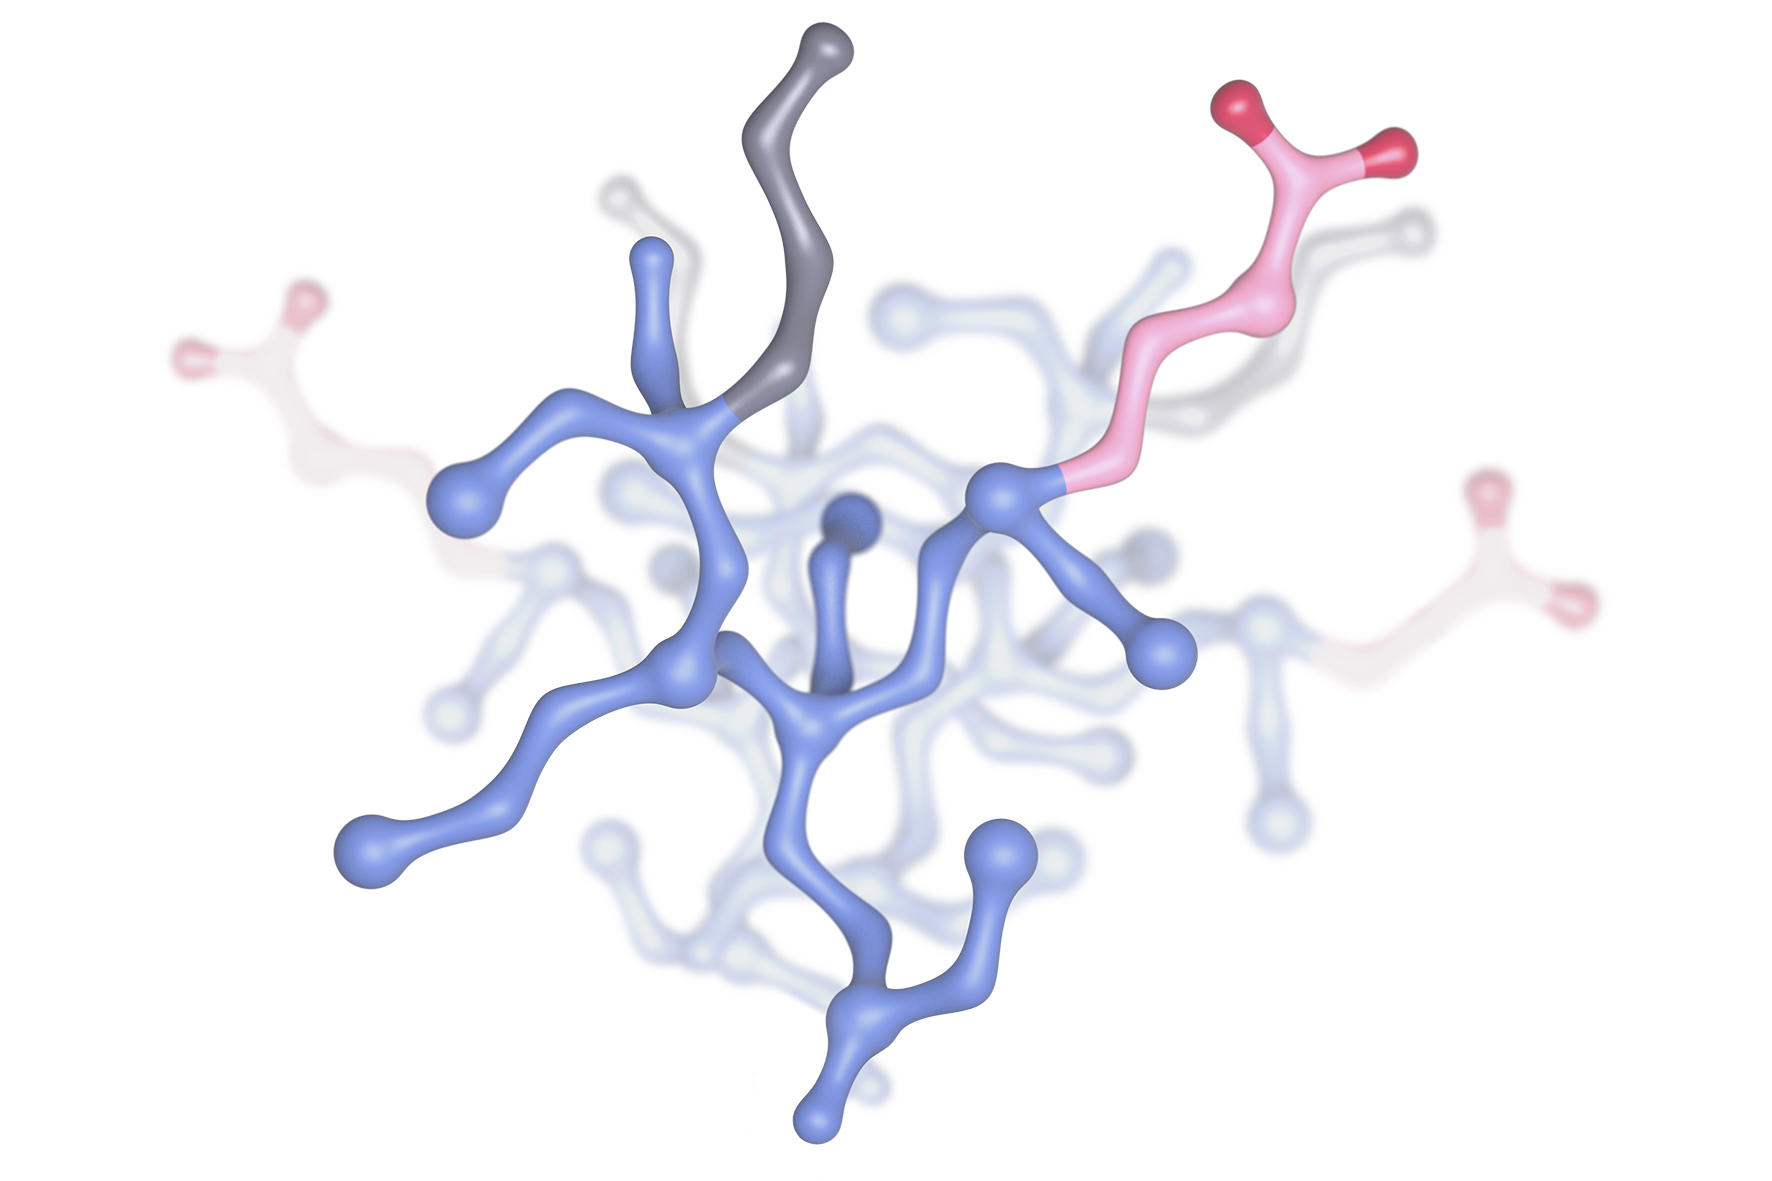 Zentrales Strukturelement eines Viromers (blau: Bindungsstelle für die zu transportierende Nukleinsäure, grau: Alkylketten für die Membrangängigkeit, rot: Carboxylreste sichern die Löslichkeit der Struktur und fungieren als pH-Sensor)